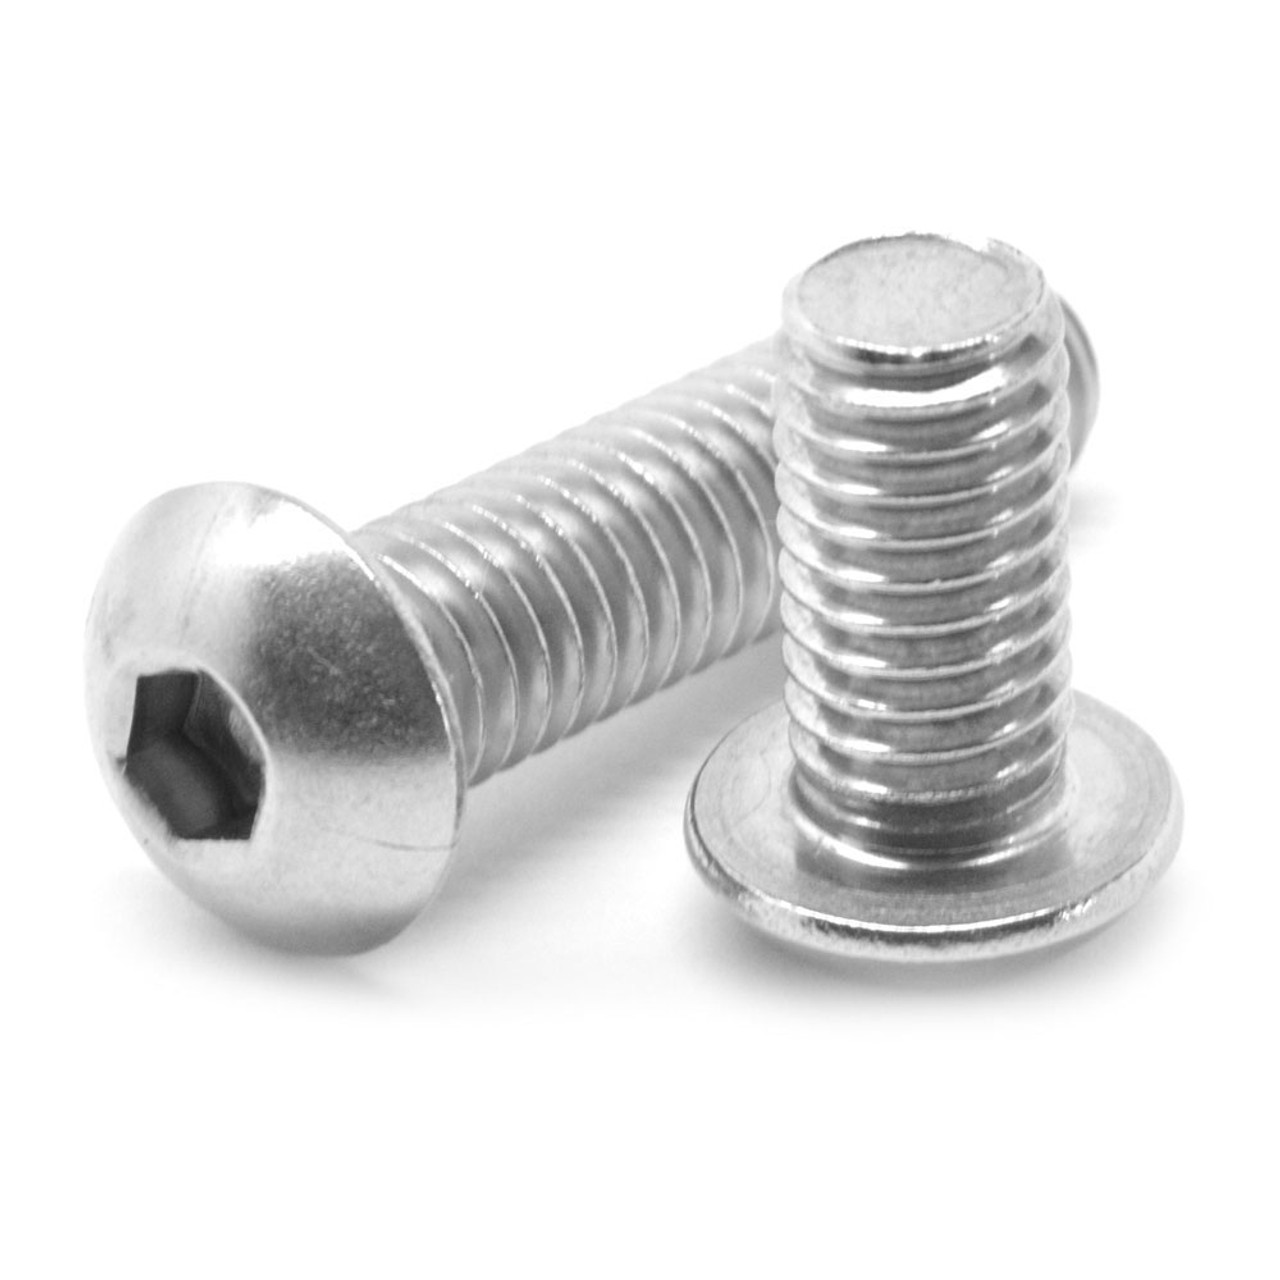 4-40 Stainless Steel Socket Cap Screws